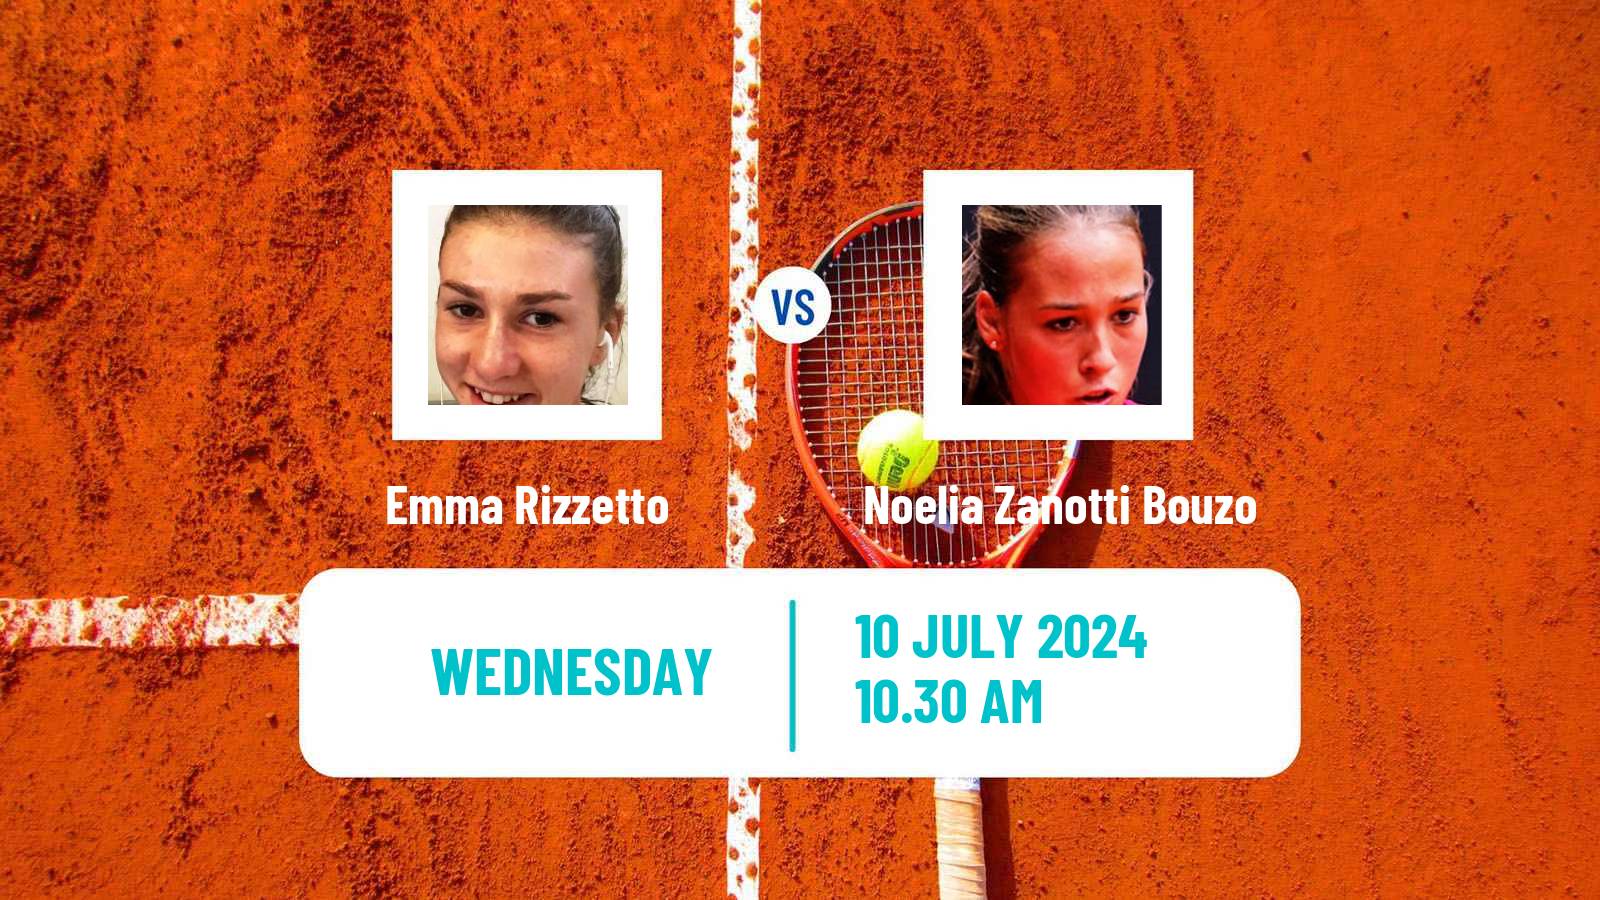 Tennis ITF W15 Monastir 26 Women Emma Rizzetto - Noelia Zanotti Bouzo